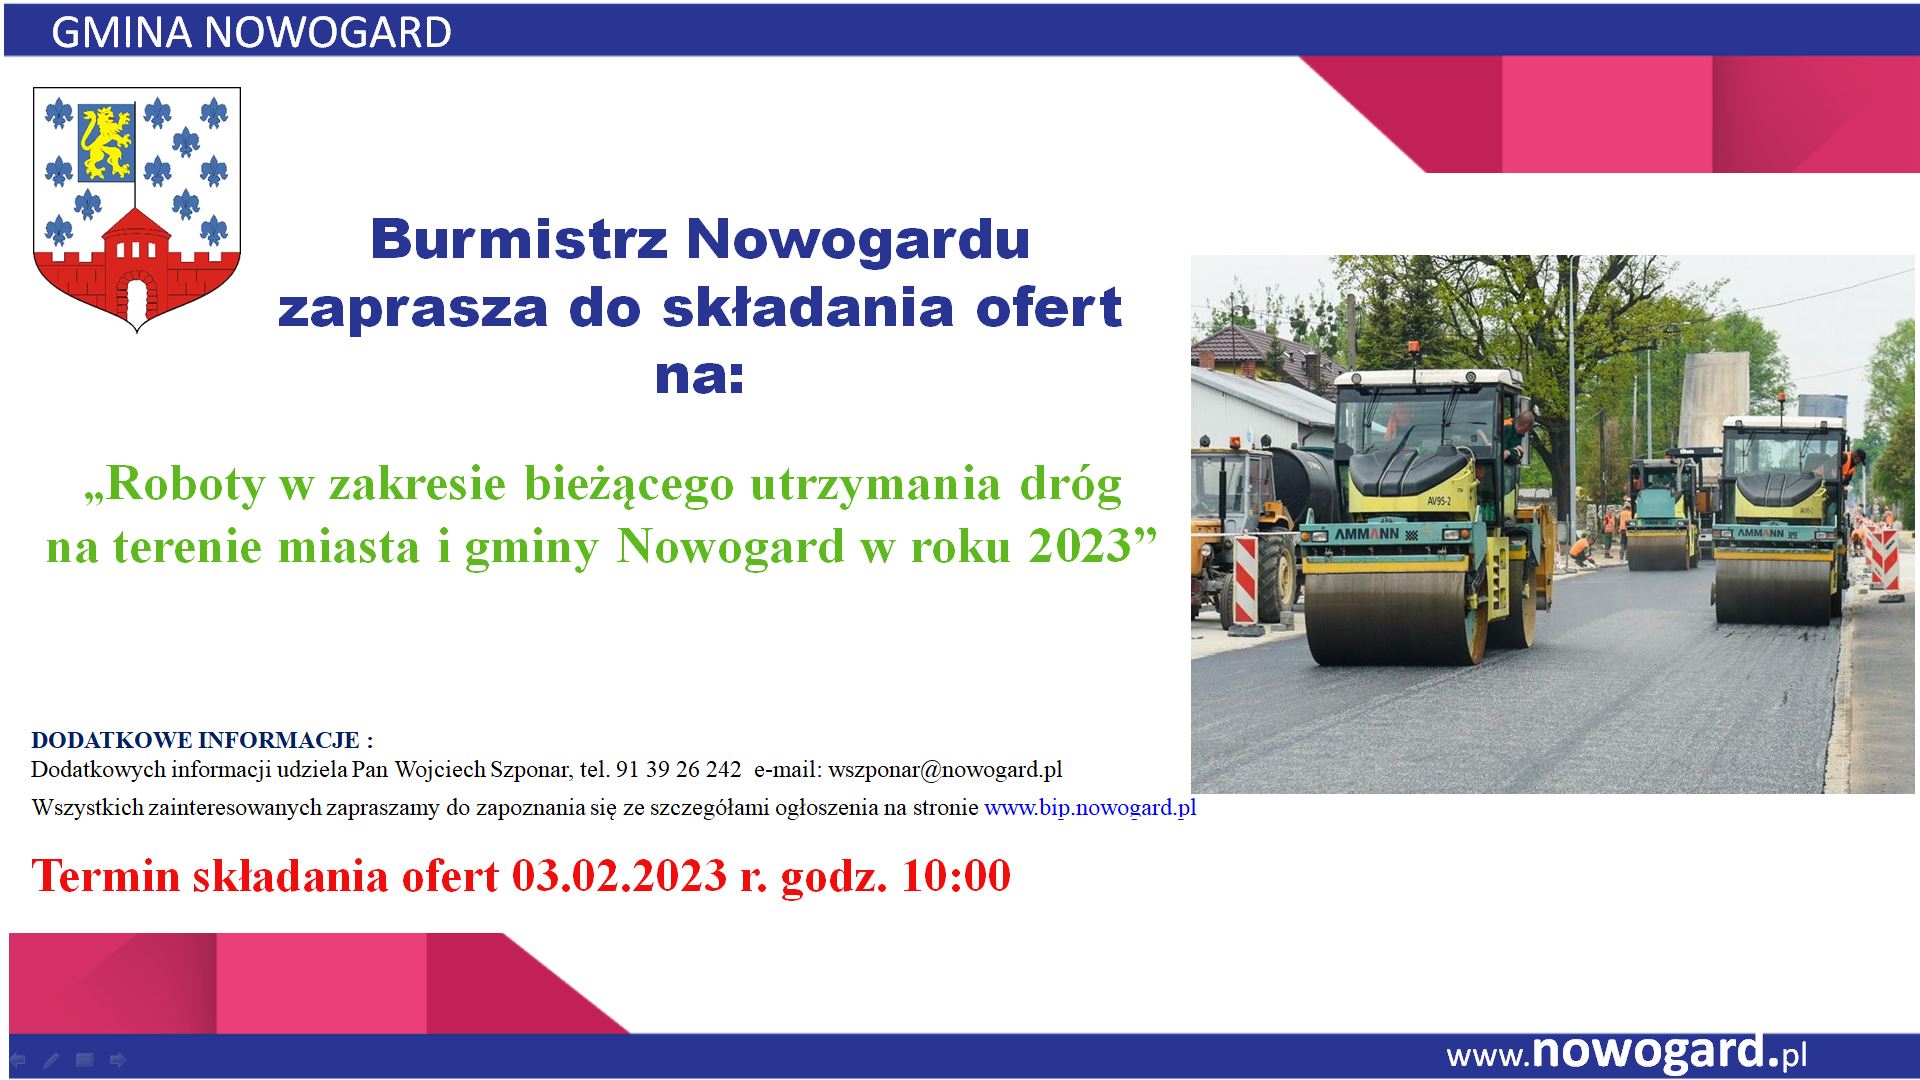 Roboty w zakresie bieżącego utrzymania dróg na terenie miasta i gminy Nowogard w roku 2023